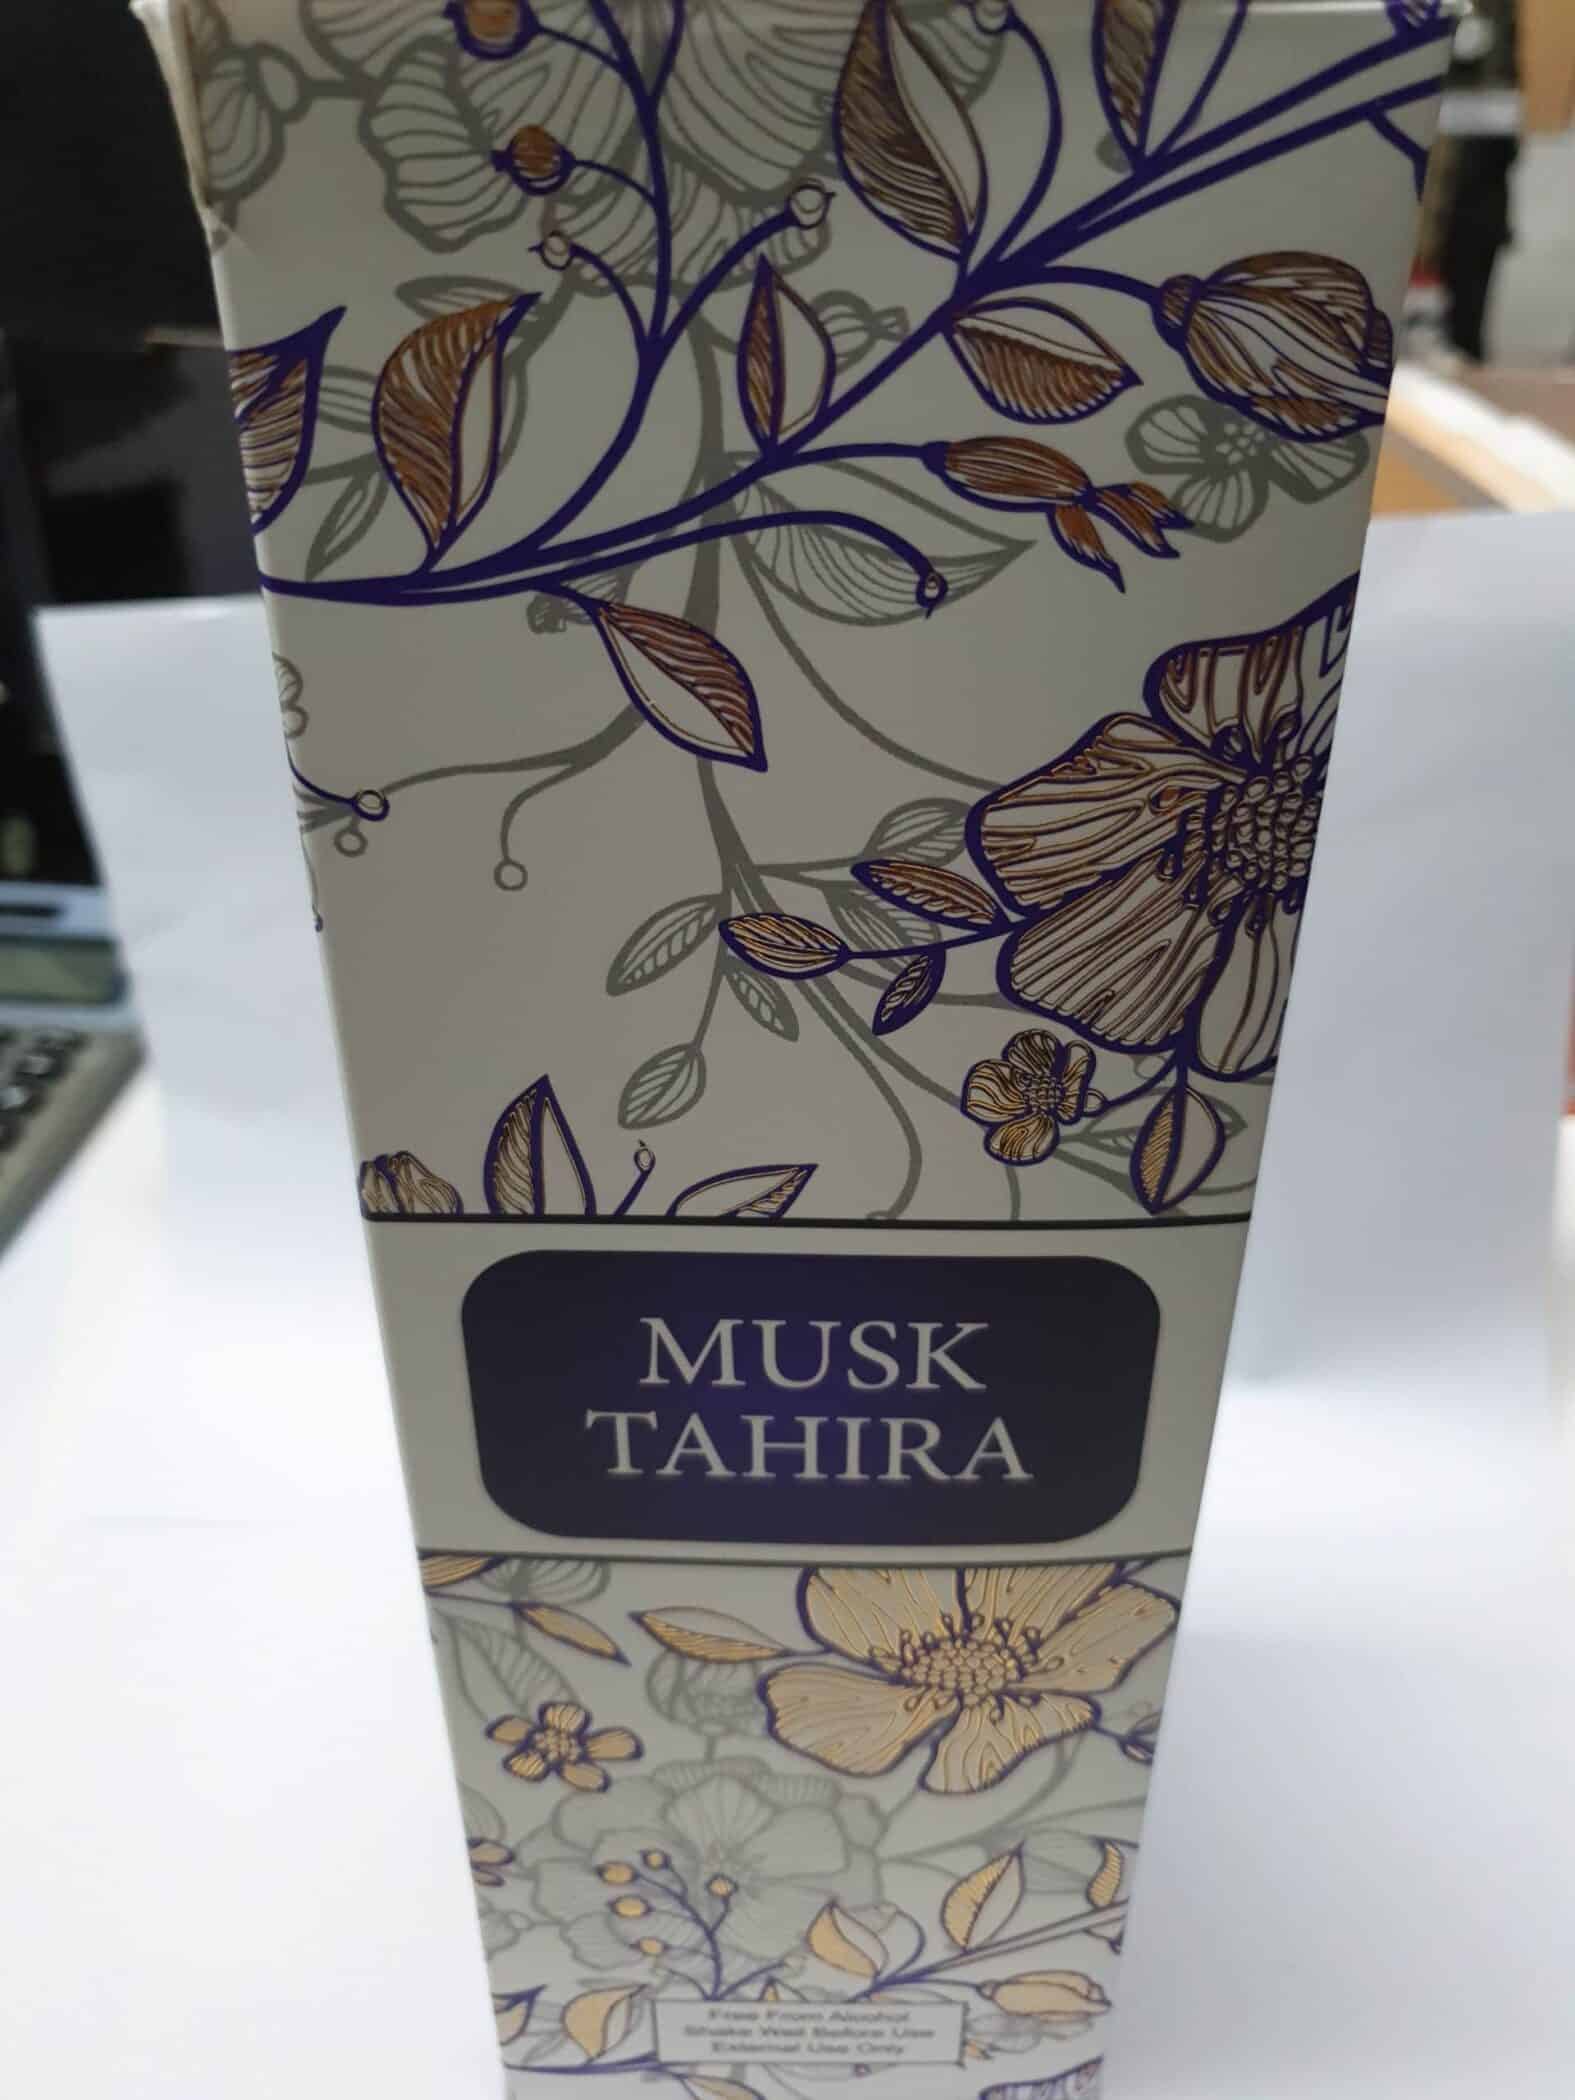 Musk Tahira Myperfumes Huisparfum